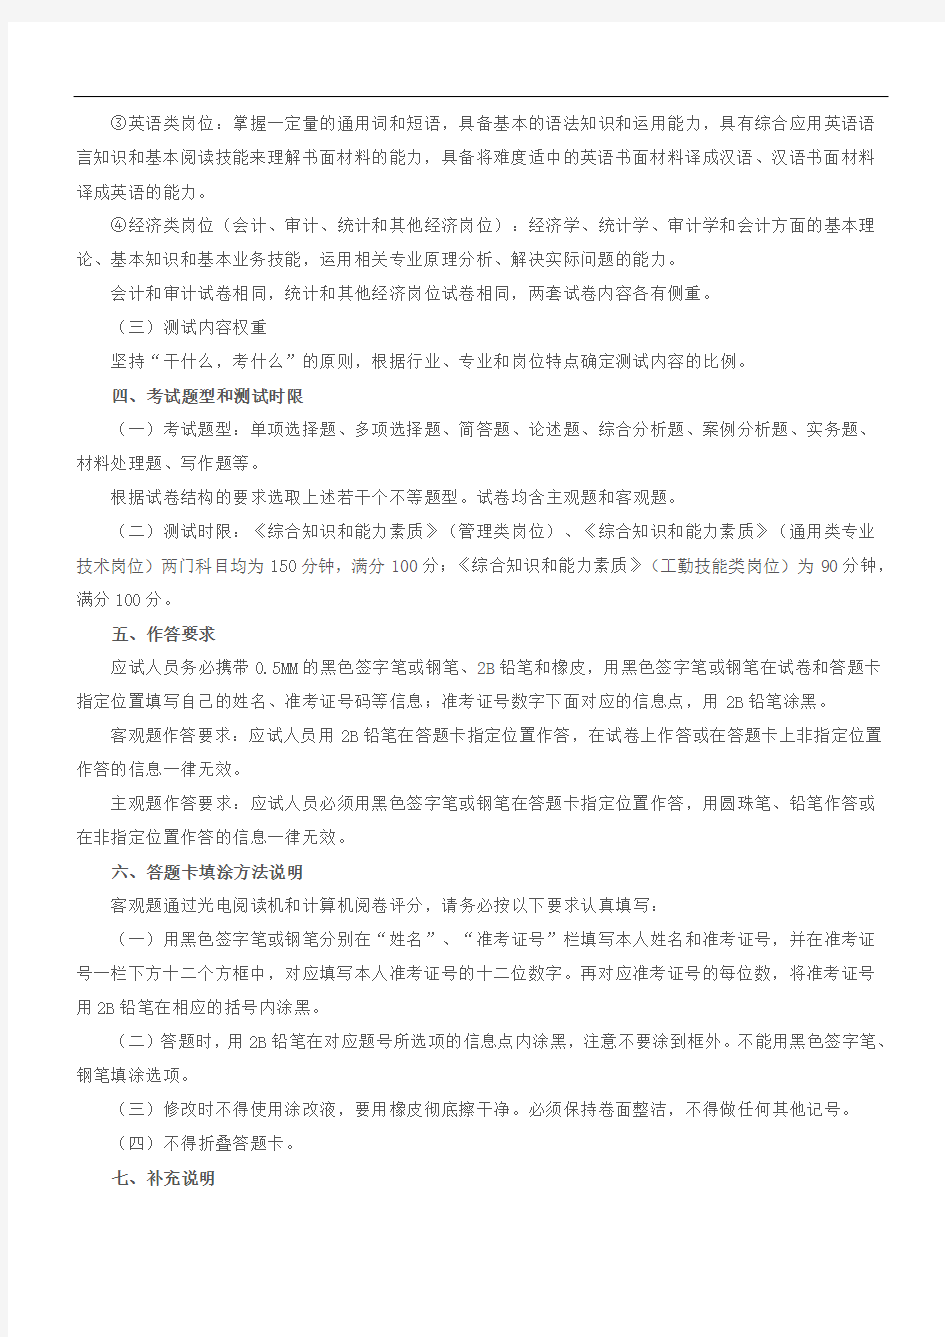 江苏省2020年省属事业单位统一公开招聘人员公共科目笔试考试大纲